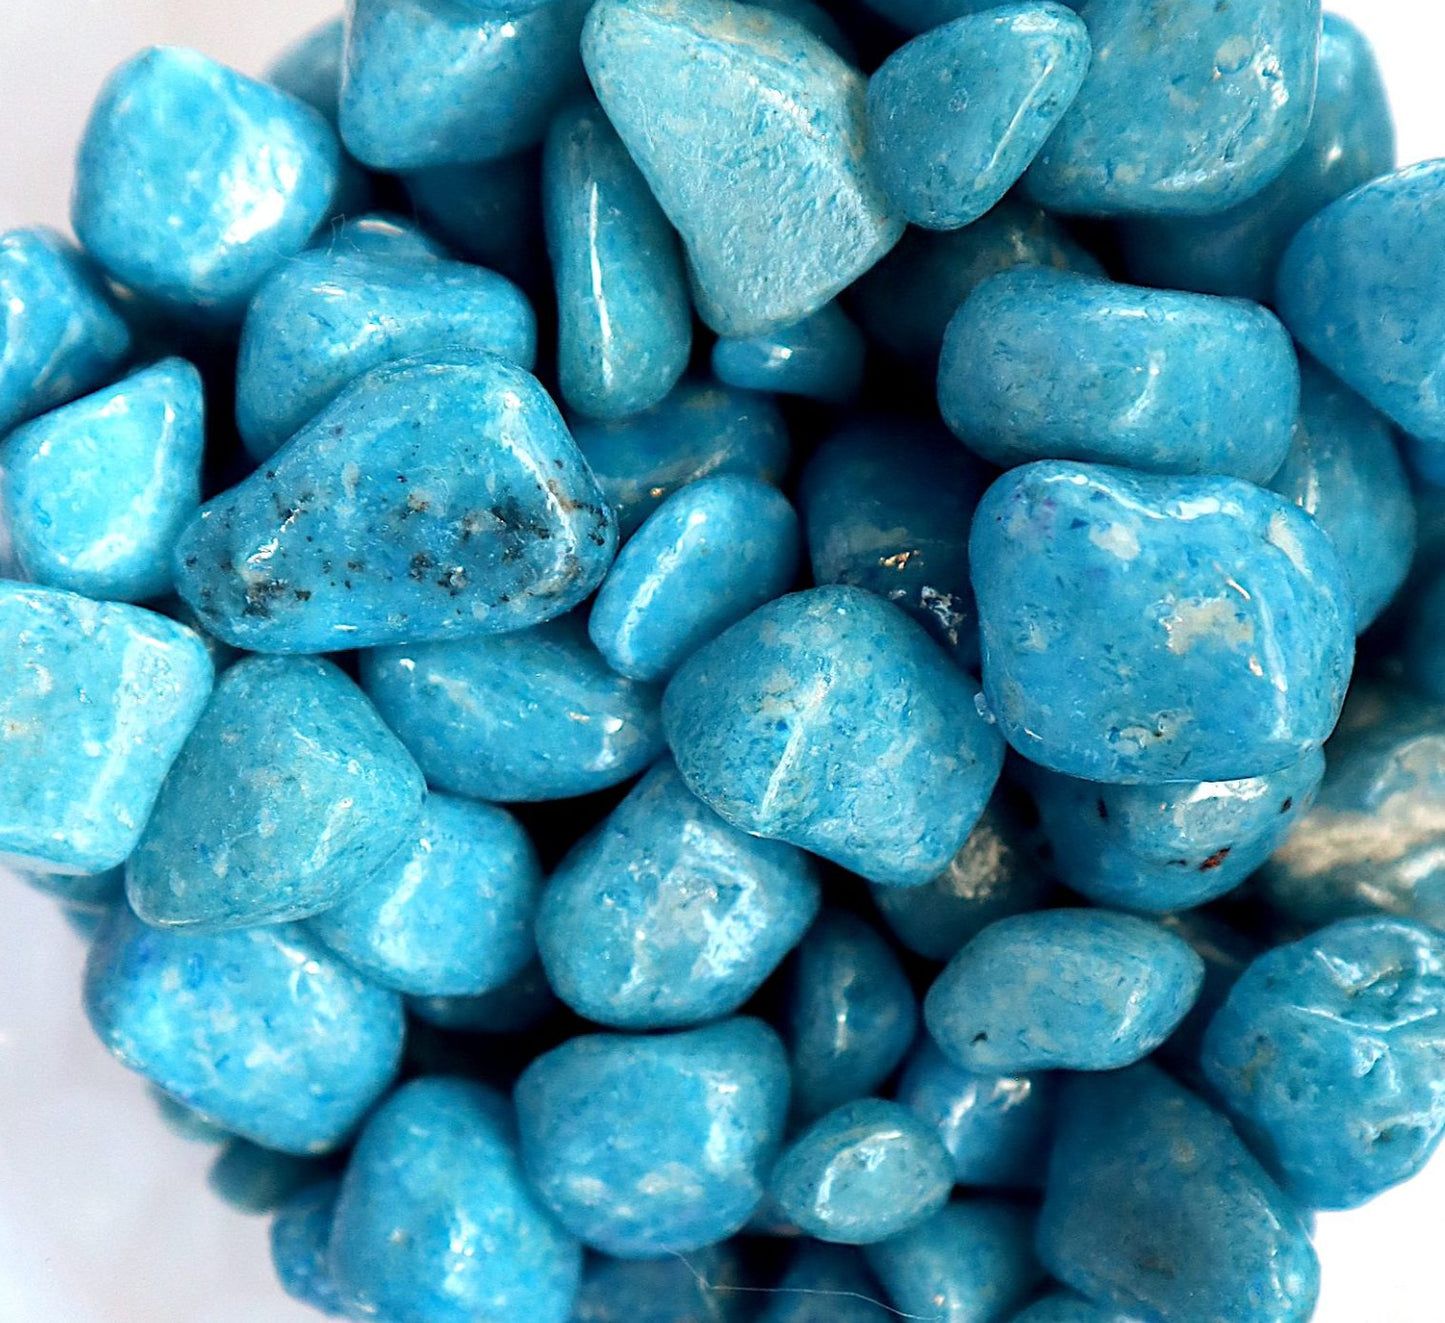 Turquoise-Ferozi Decorative Painted Pebbles “Aquarium” 10-15mm